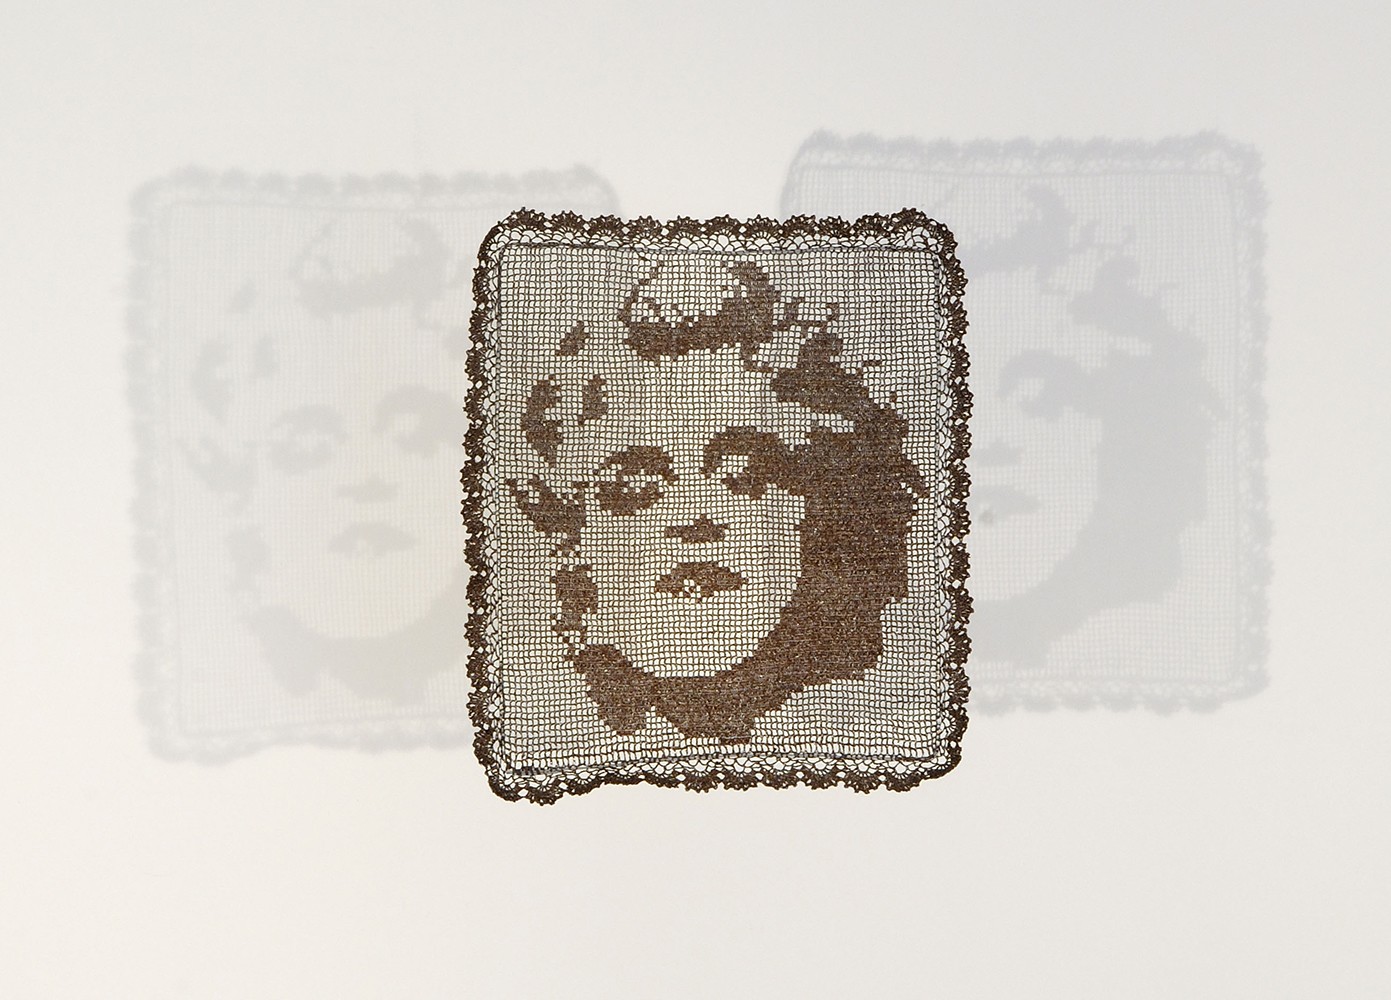 Madonna, 2013., Magnetne trake iz audio-kaseta sa muzikom Madone, Kukičanje; rad izvela Danica Cvetković, 64 × 55 cm